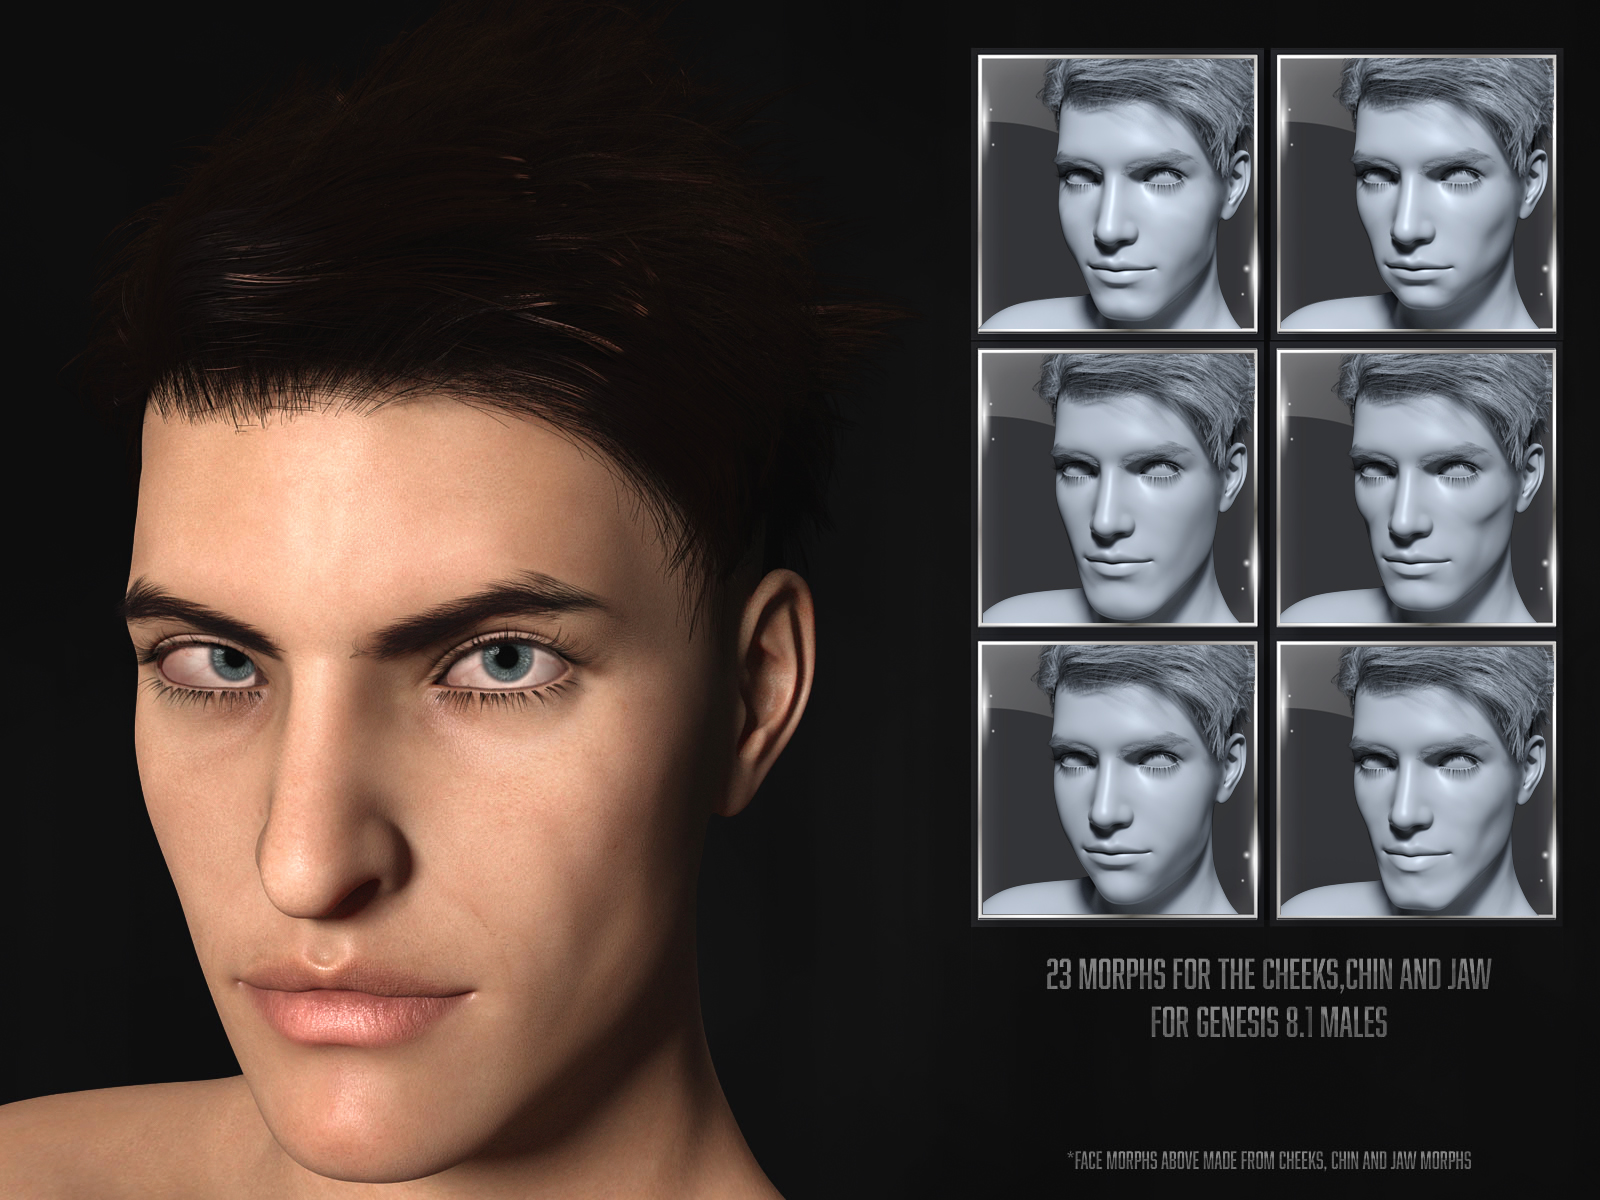 Tm Detailed Face Morphs For Genesis 81 Male Daz 3d